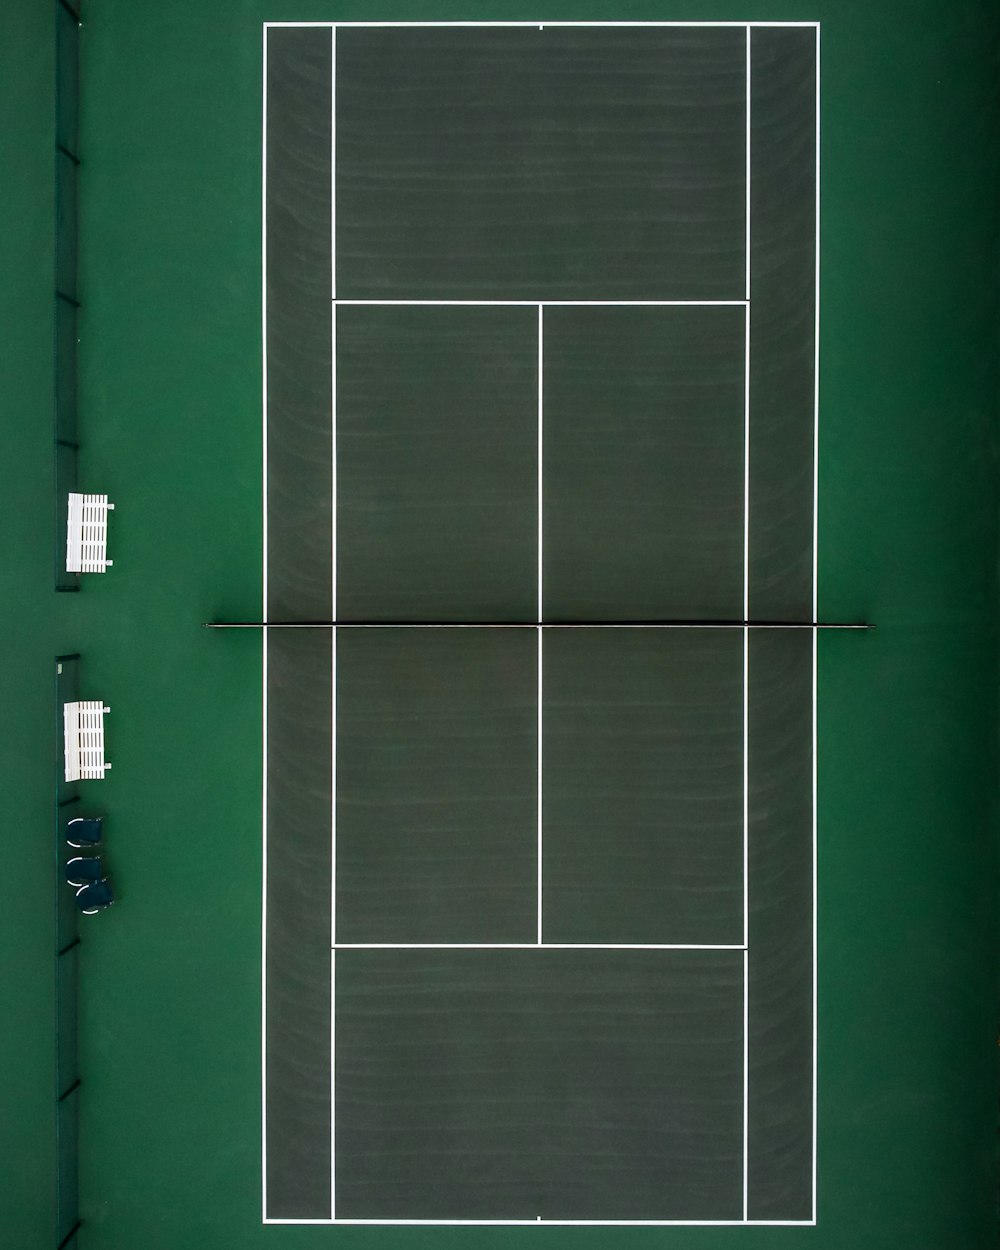 quadra de tênis verde